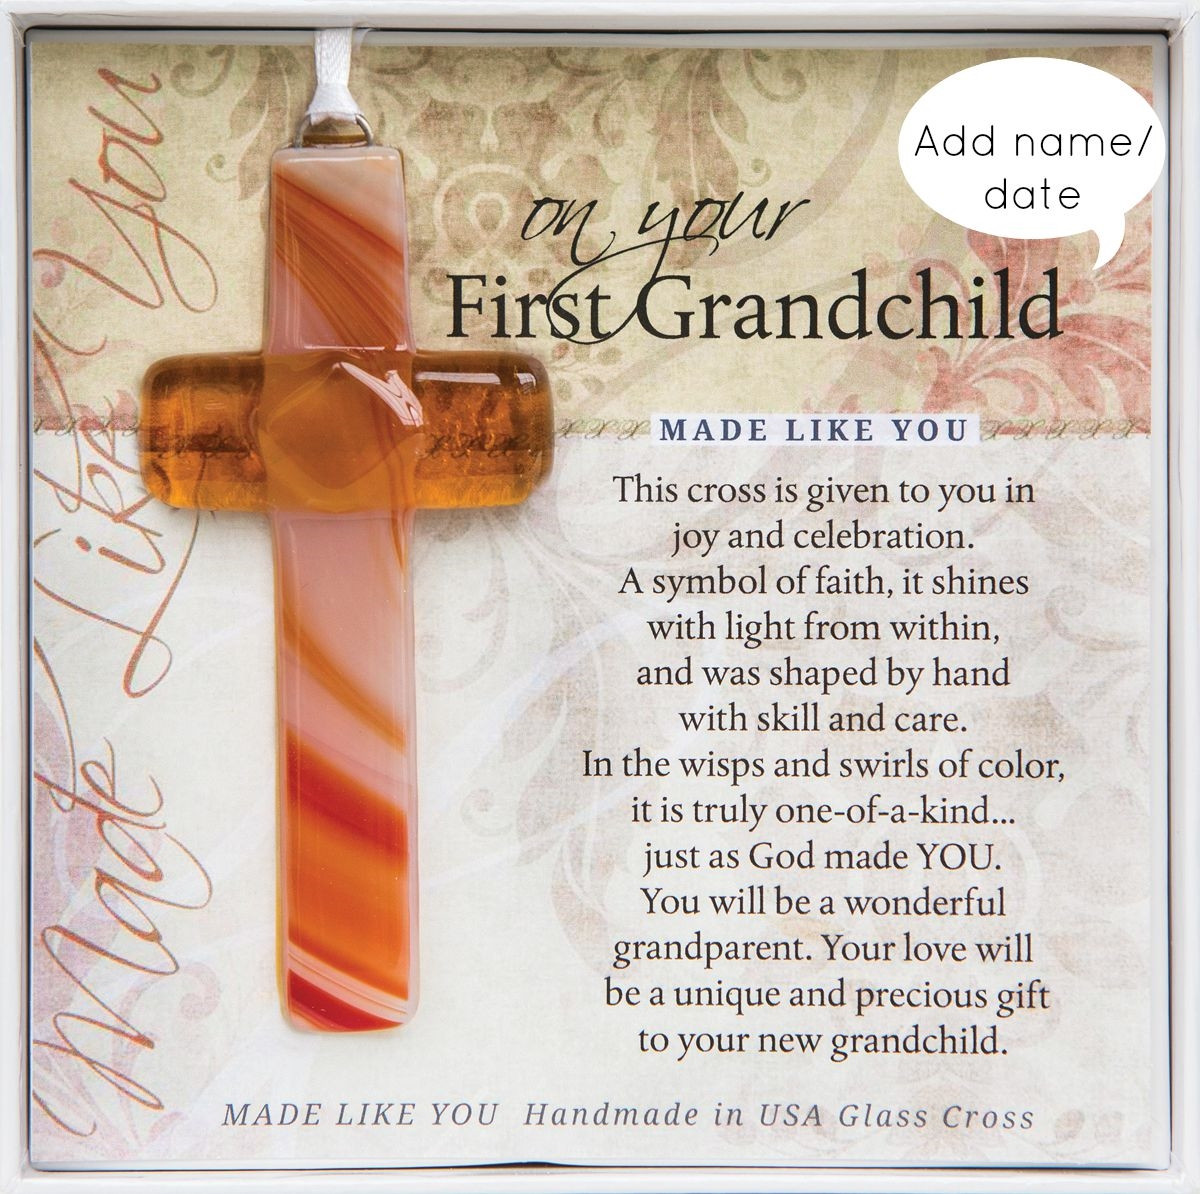 Best ideas about First Grandchild Gift Ideas
. Save or Pin Personalized First Grandchild Gift Cross Handmade Glass Now.